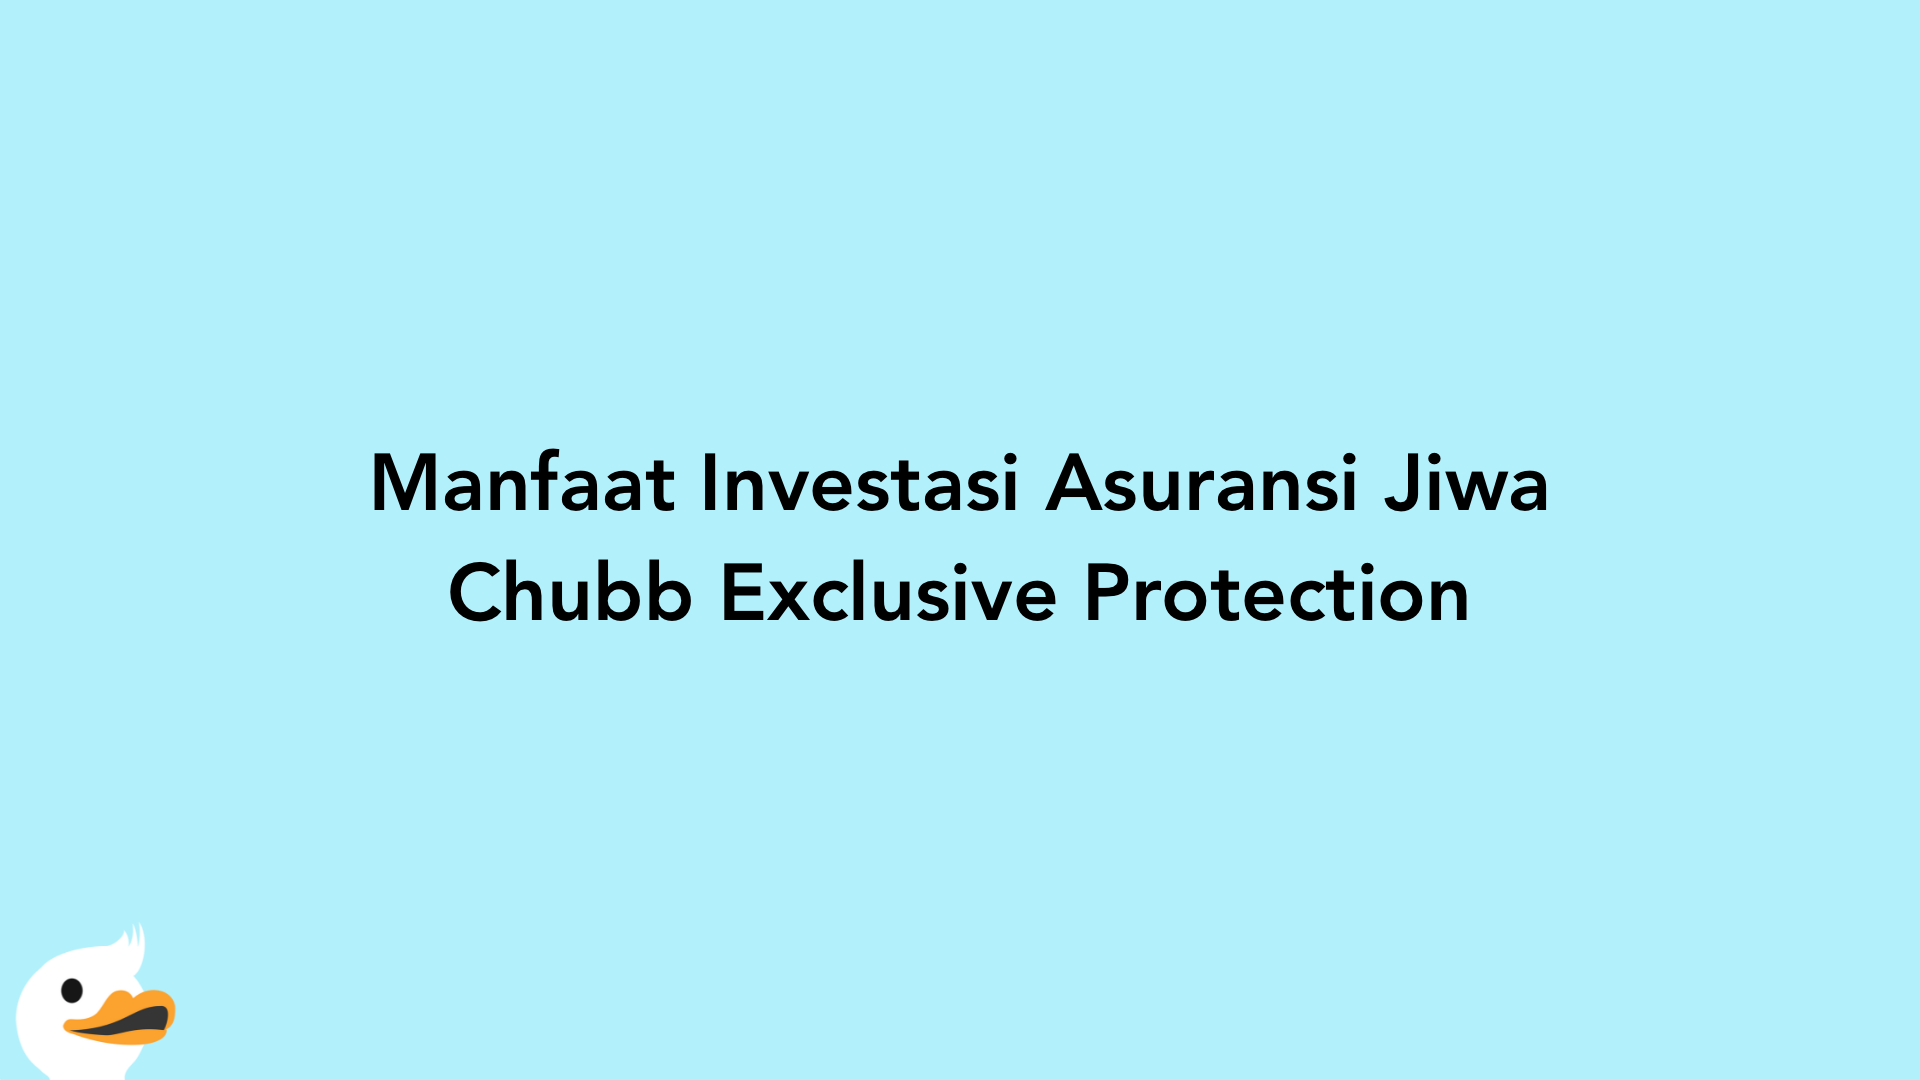 Manfaat Investasi Asuransi Jiwa Chubb Exclusive Protection